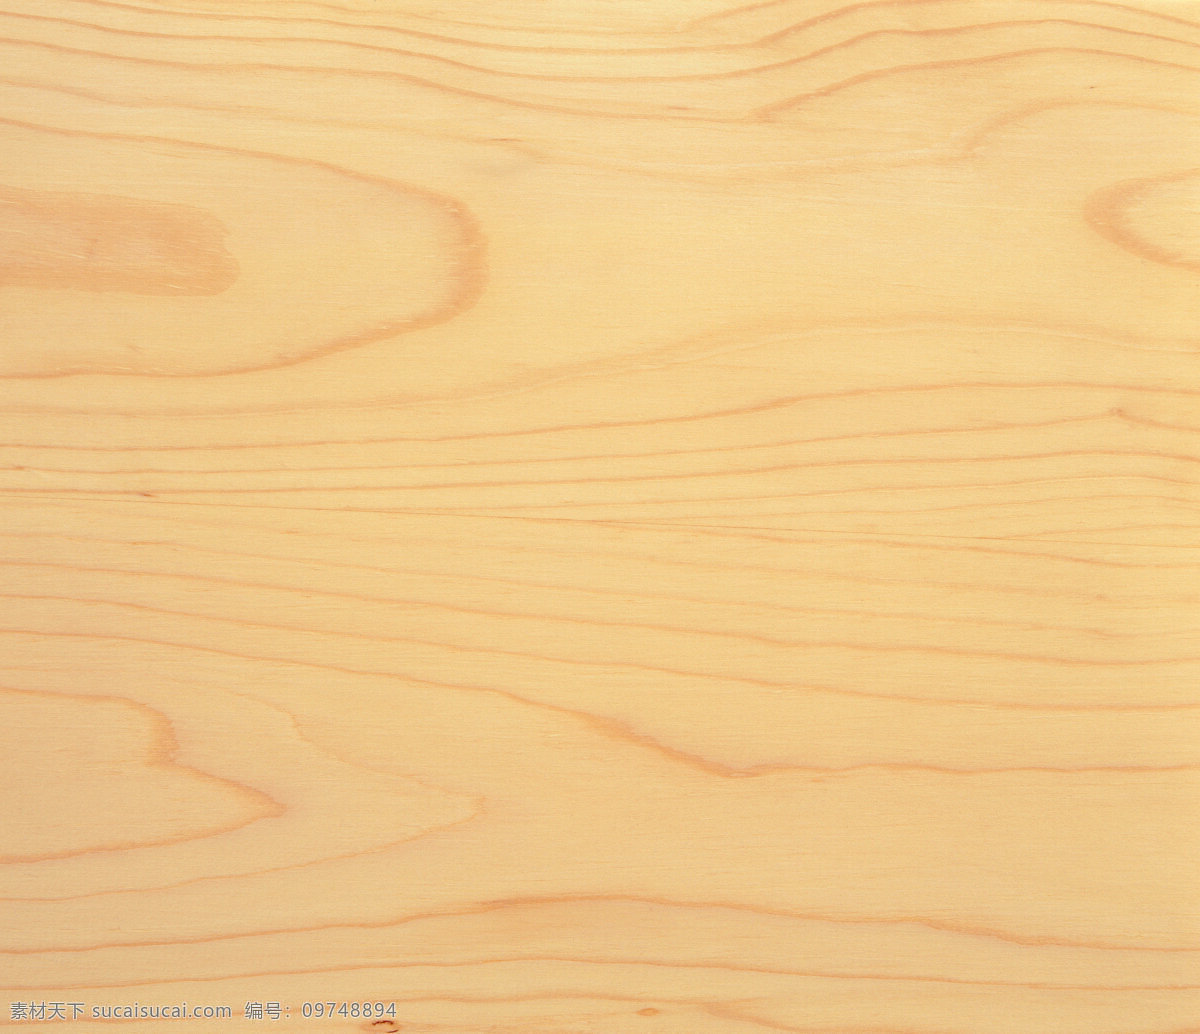 树木年轮 线条 木板 纹路 生活百科 生活素材 自然素材 摄影图库